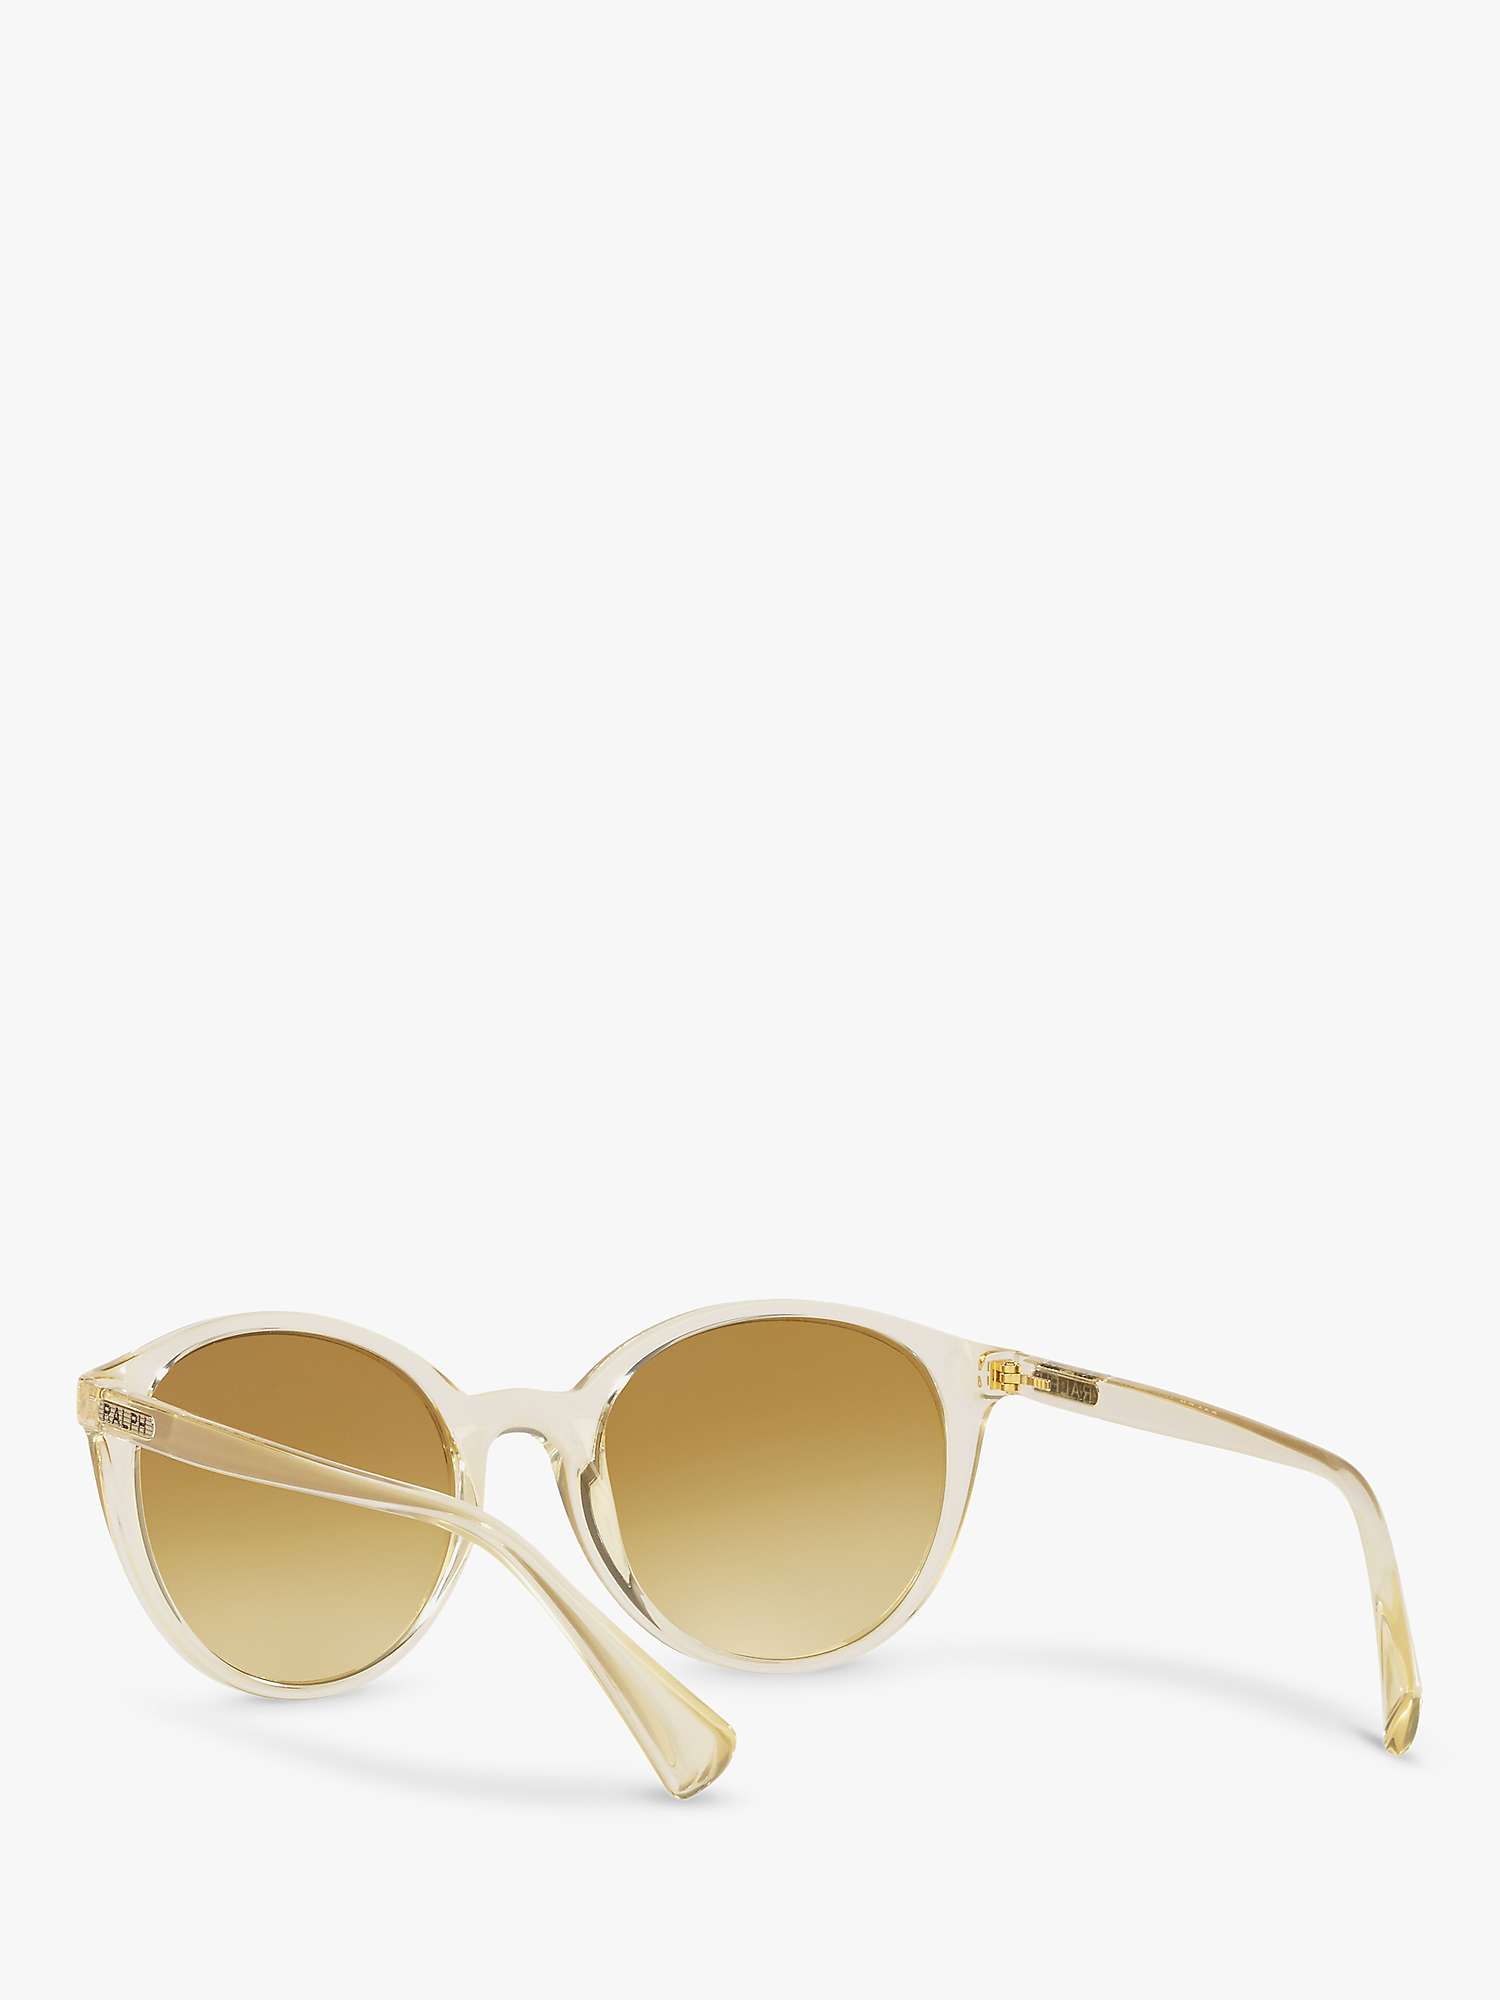 Buy Ralph Lauren RA5273 Women's Oval Sunglasses, Pinot Grigio/Brown Online at johnlewis.com